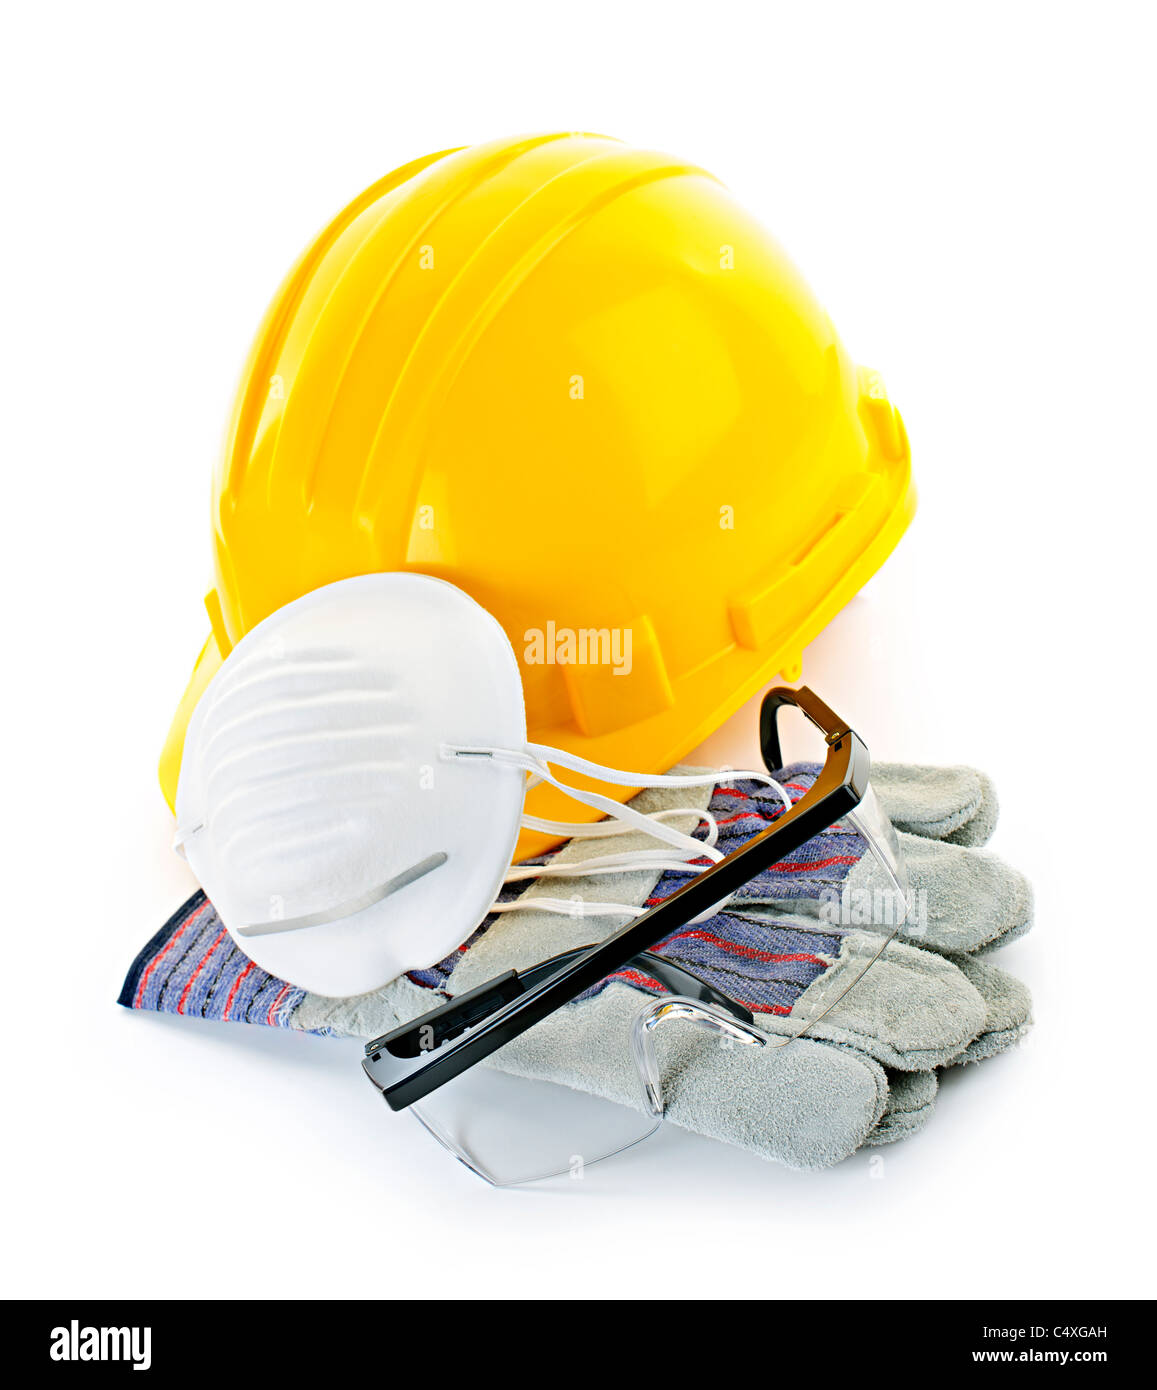 L'équipement de sécurité de construction avec casque, gants, lunettes et masque isolated on white Banque D'Images